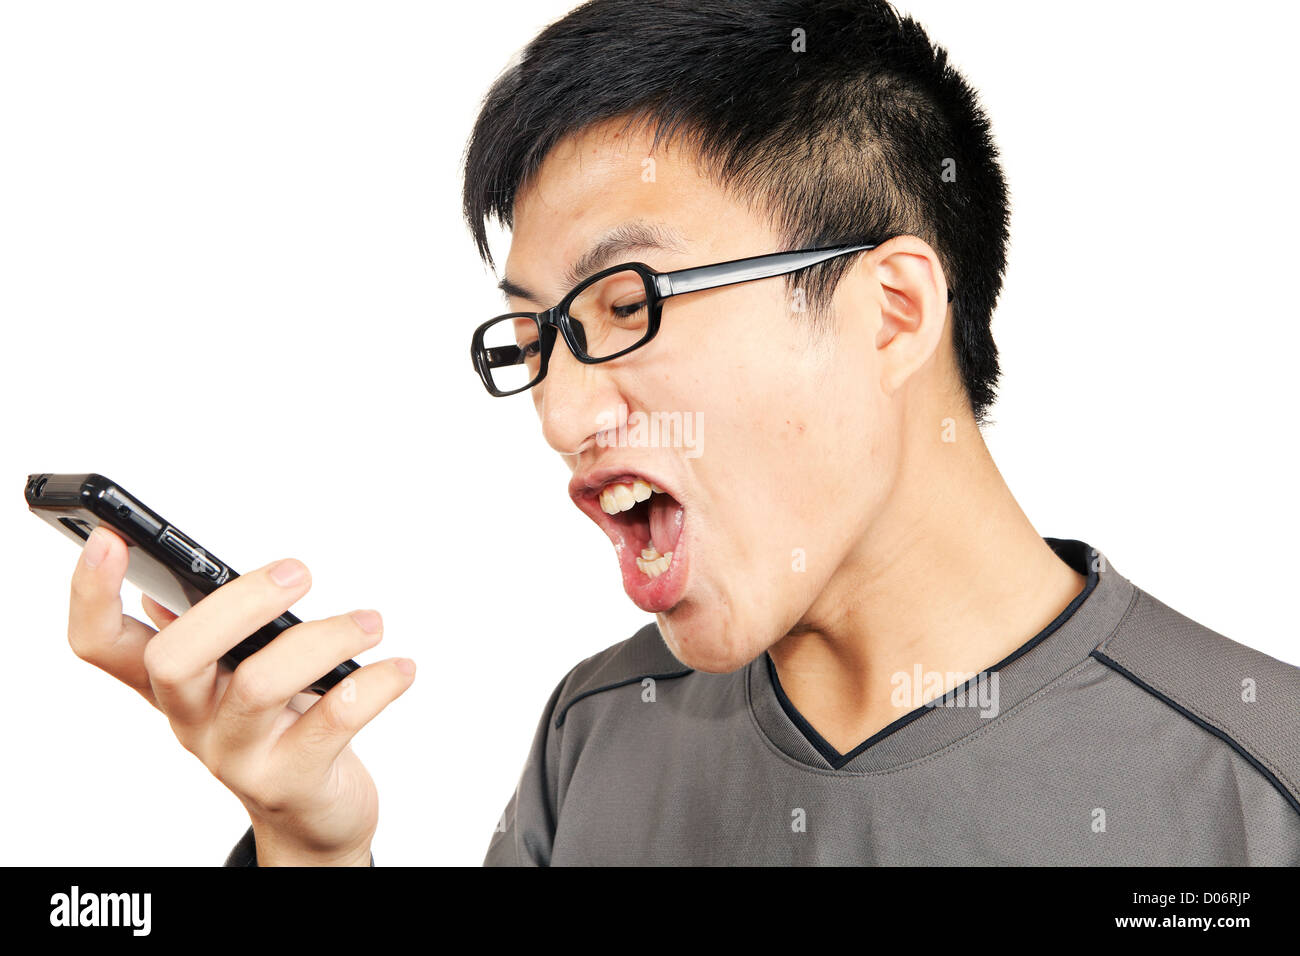 man yells to his phone Stock Photo